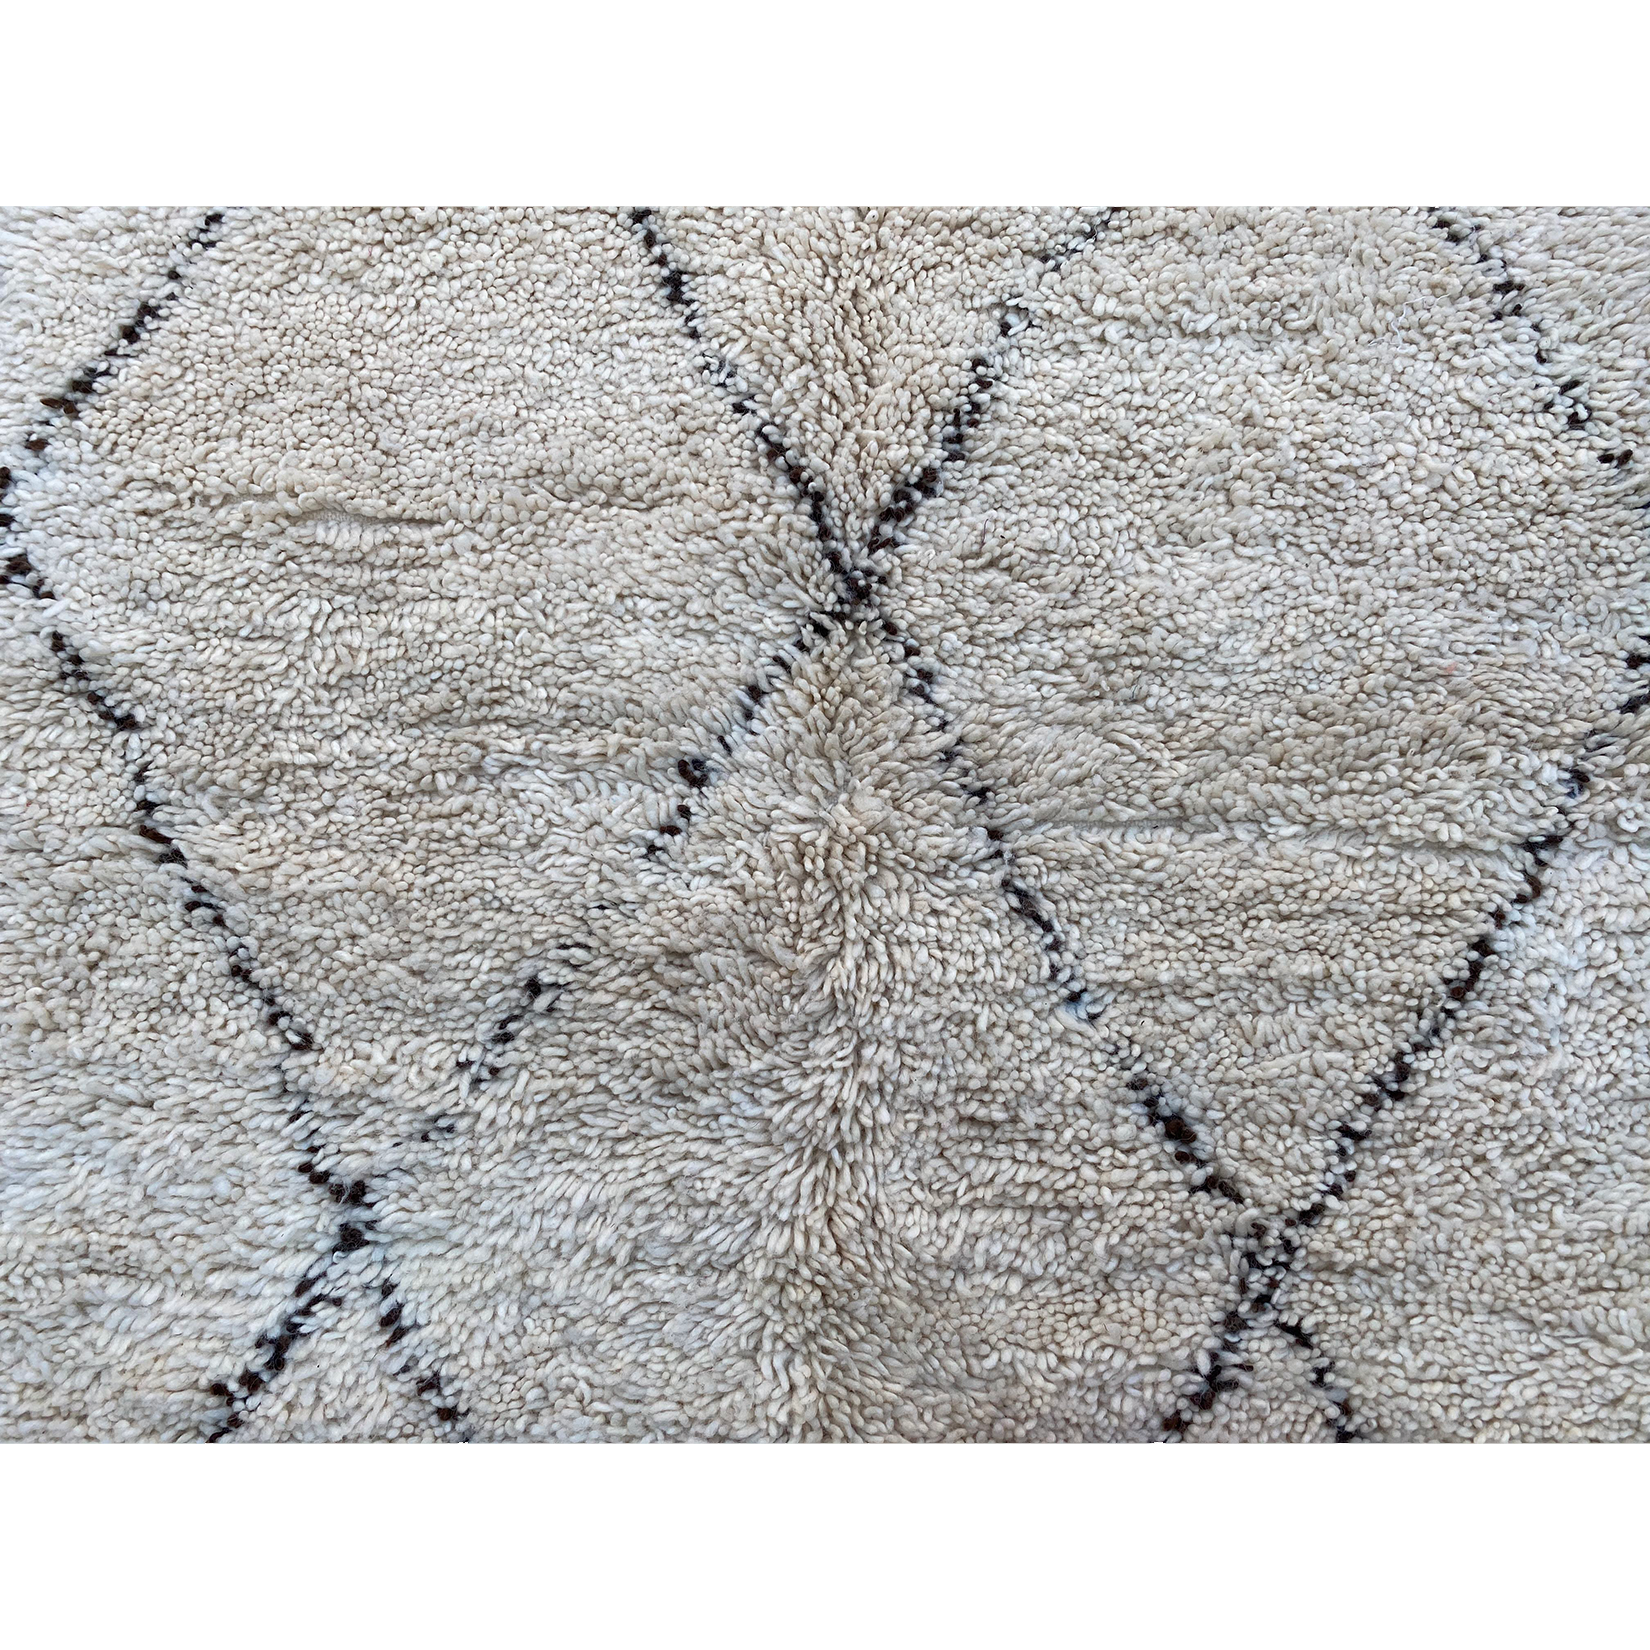 Plush white berber carpet with geometric pattern design - Kantara | Moroccan Rugs